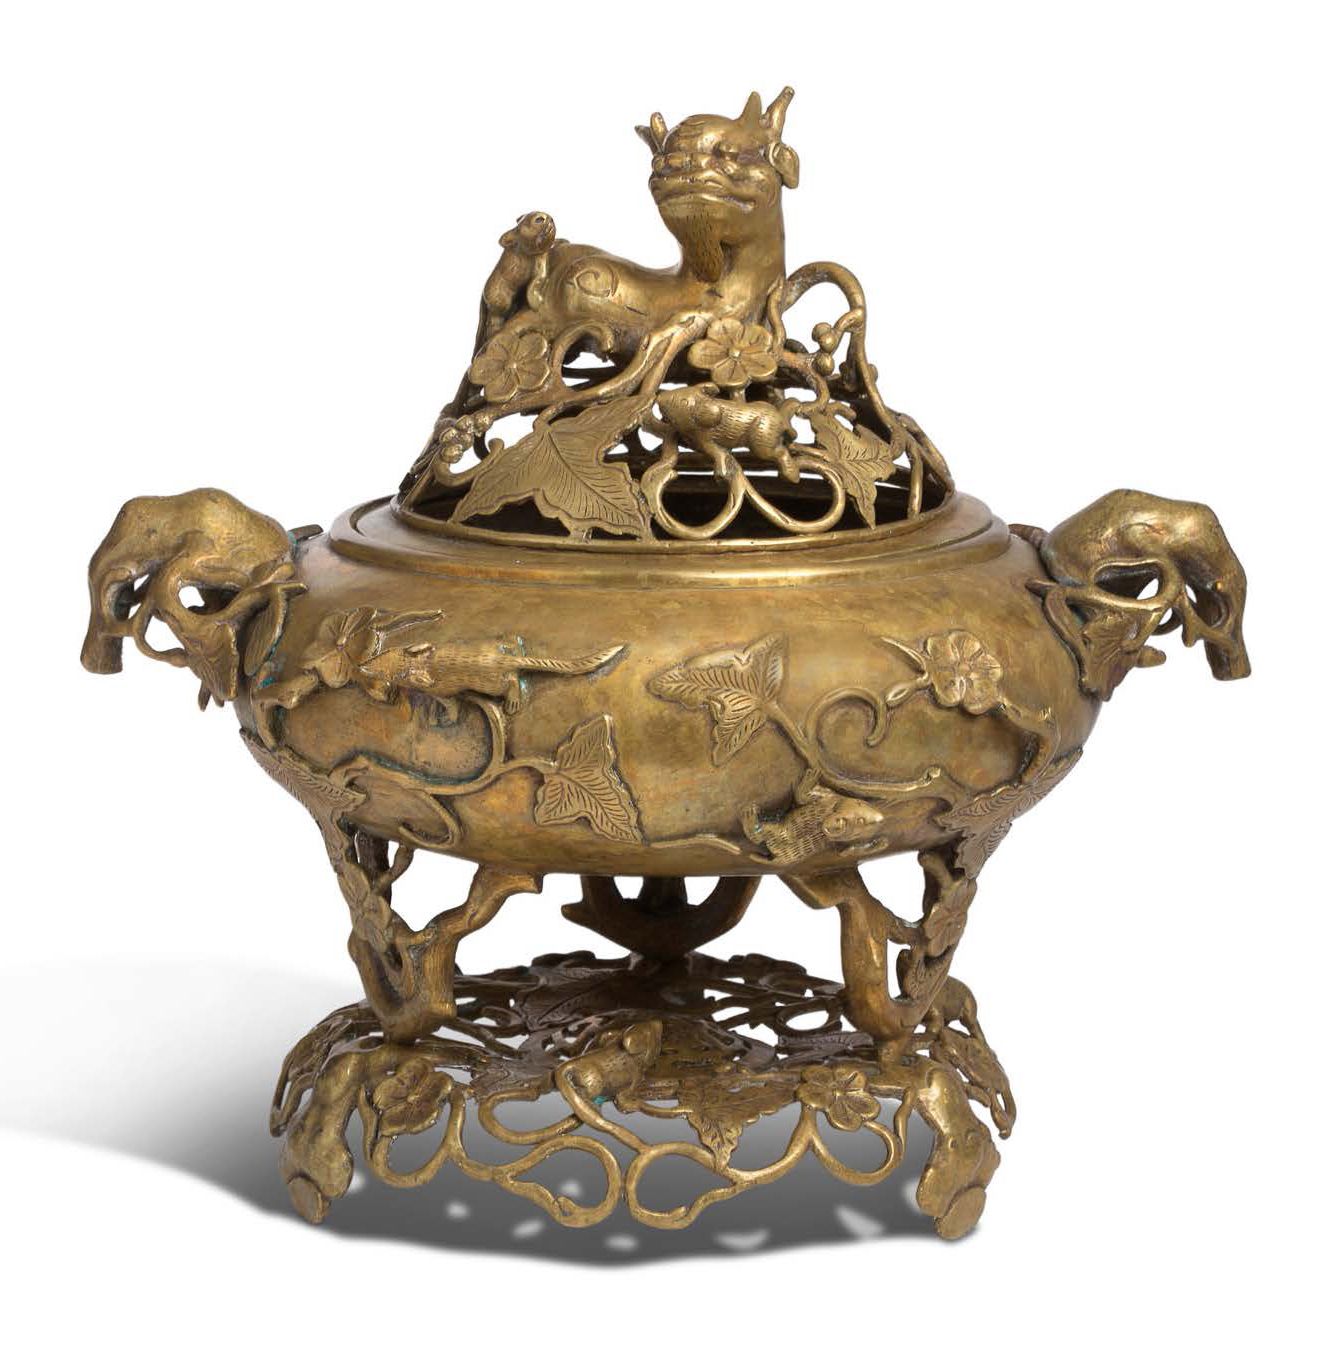 Vietnam vers 1900 
Incensiere tripode rivestito in bronzo, con il corpo rigonfio&hellip;